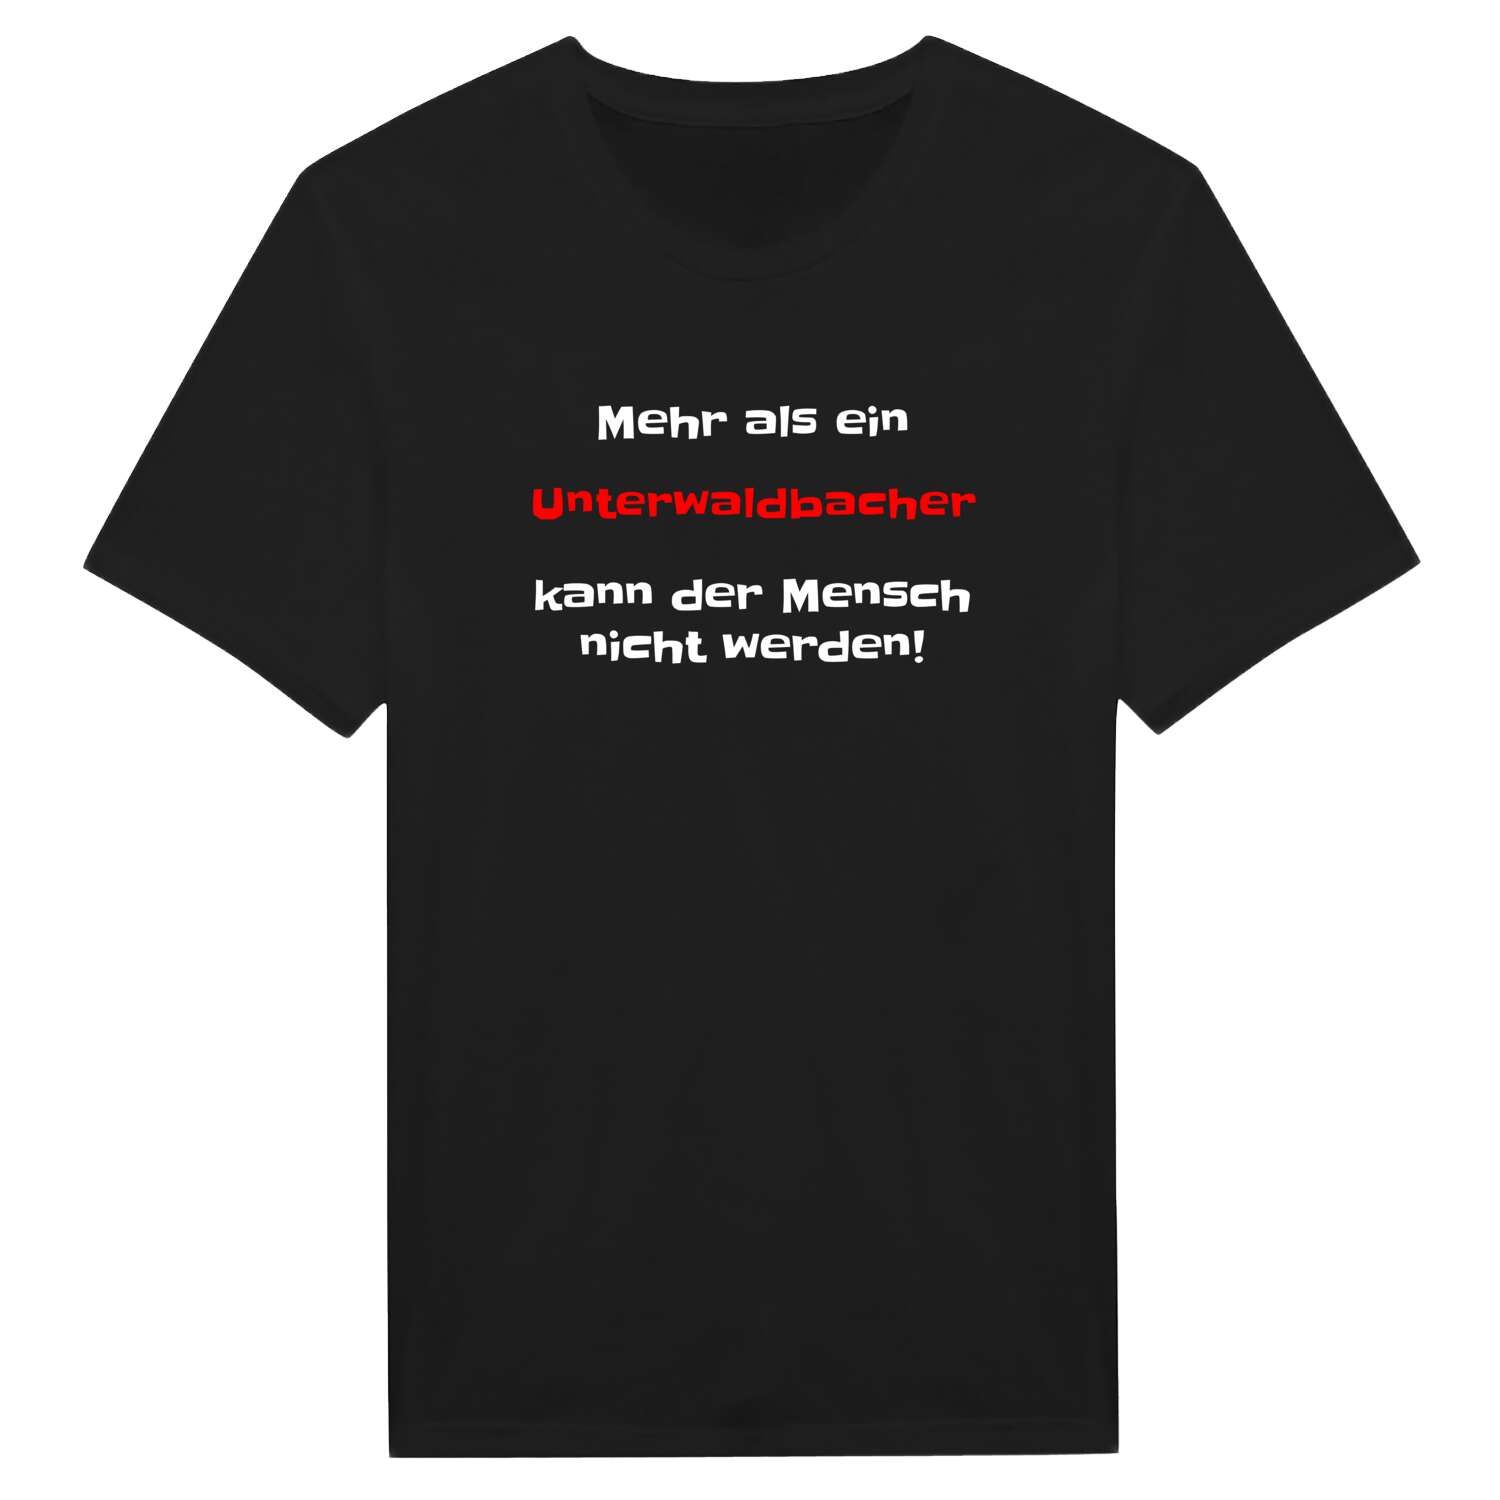 Unterwaldbach T-Shirt »Mehr als ein«